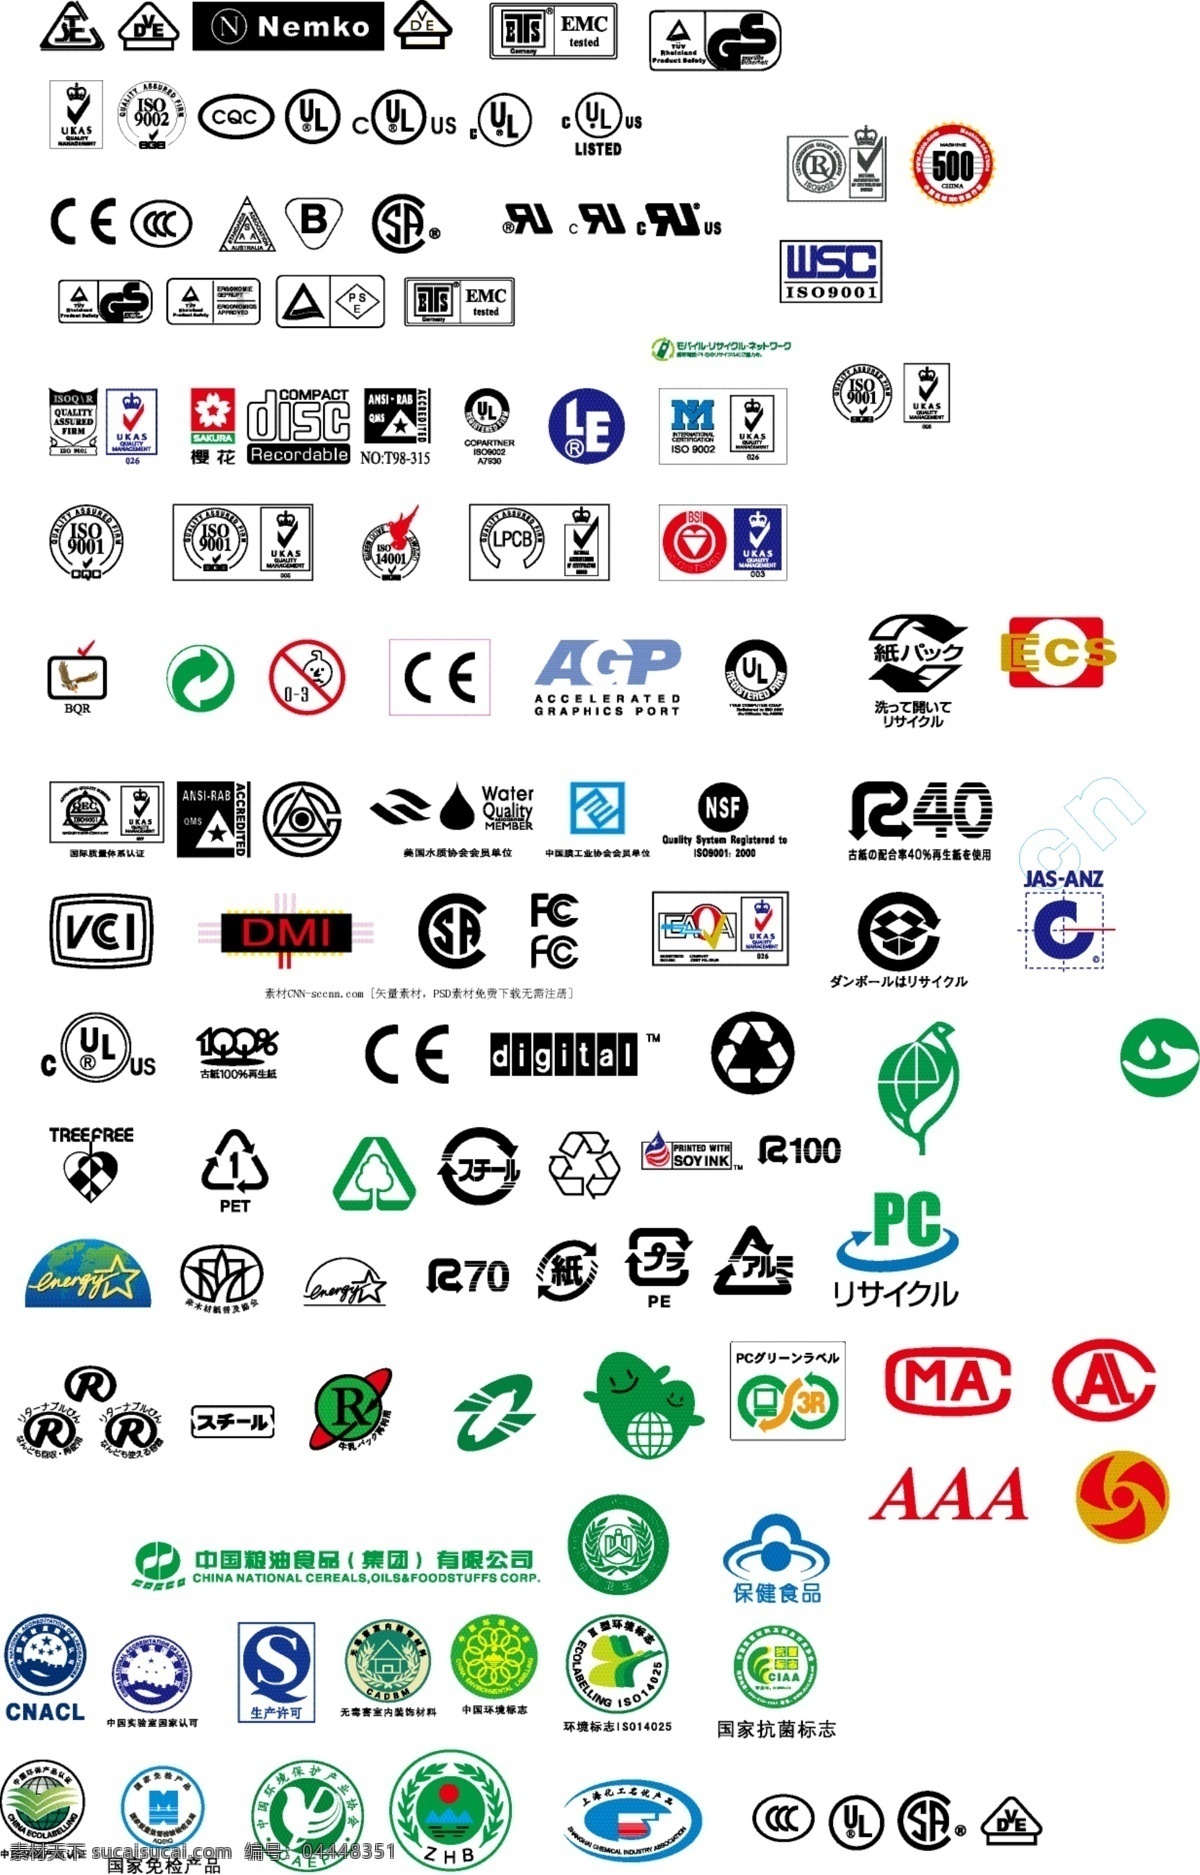 各类认证标志 循环标志 日文标志 保健食品标志 生产许可标志 国家免检标志 纸箱标志 公共标识标志 标识标志图标 矢量